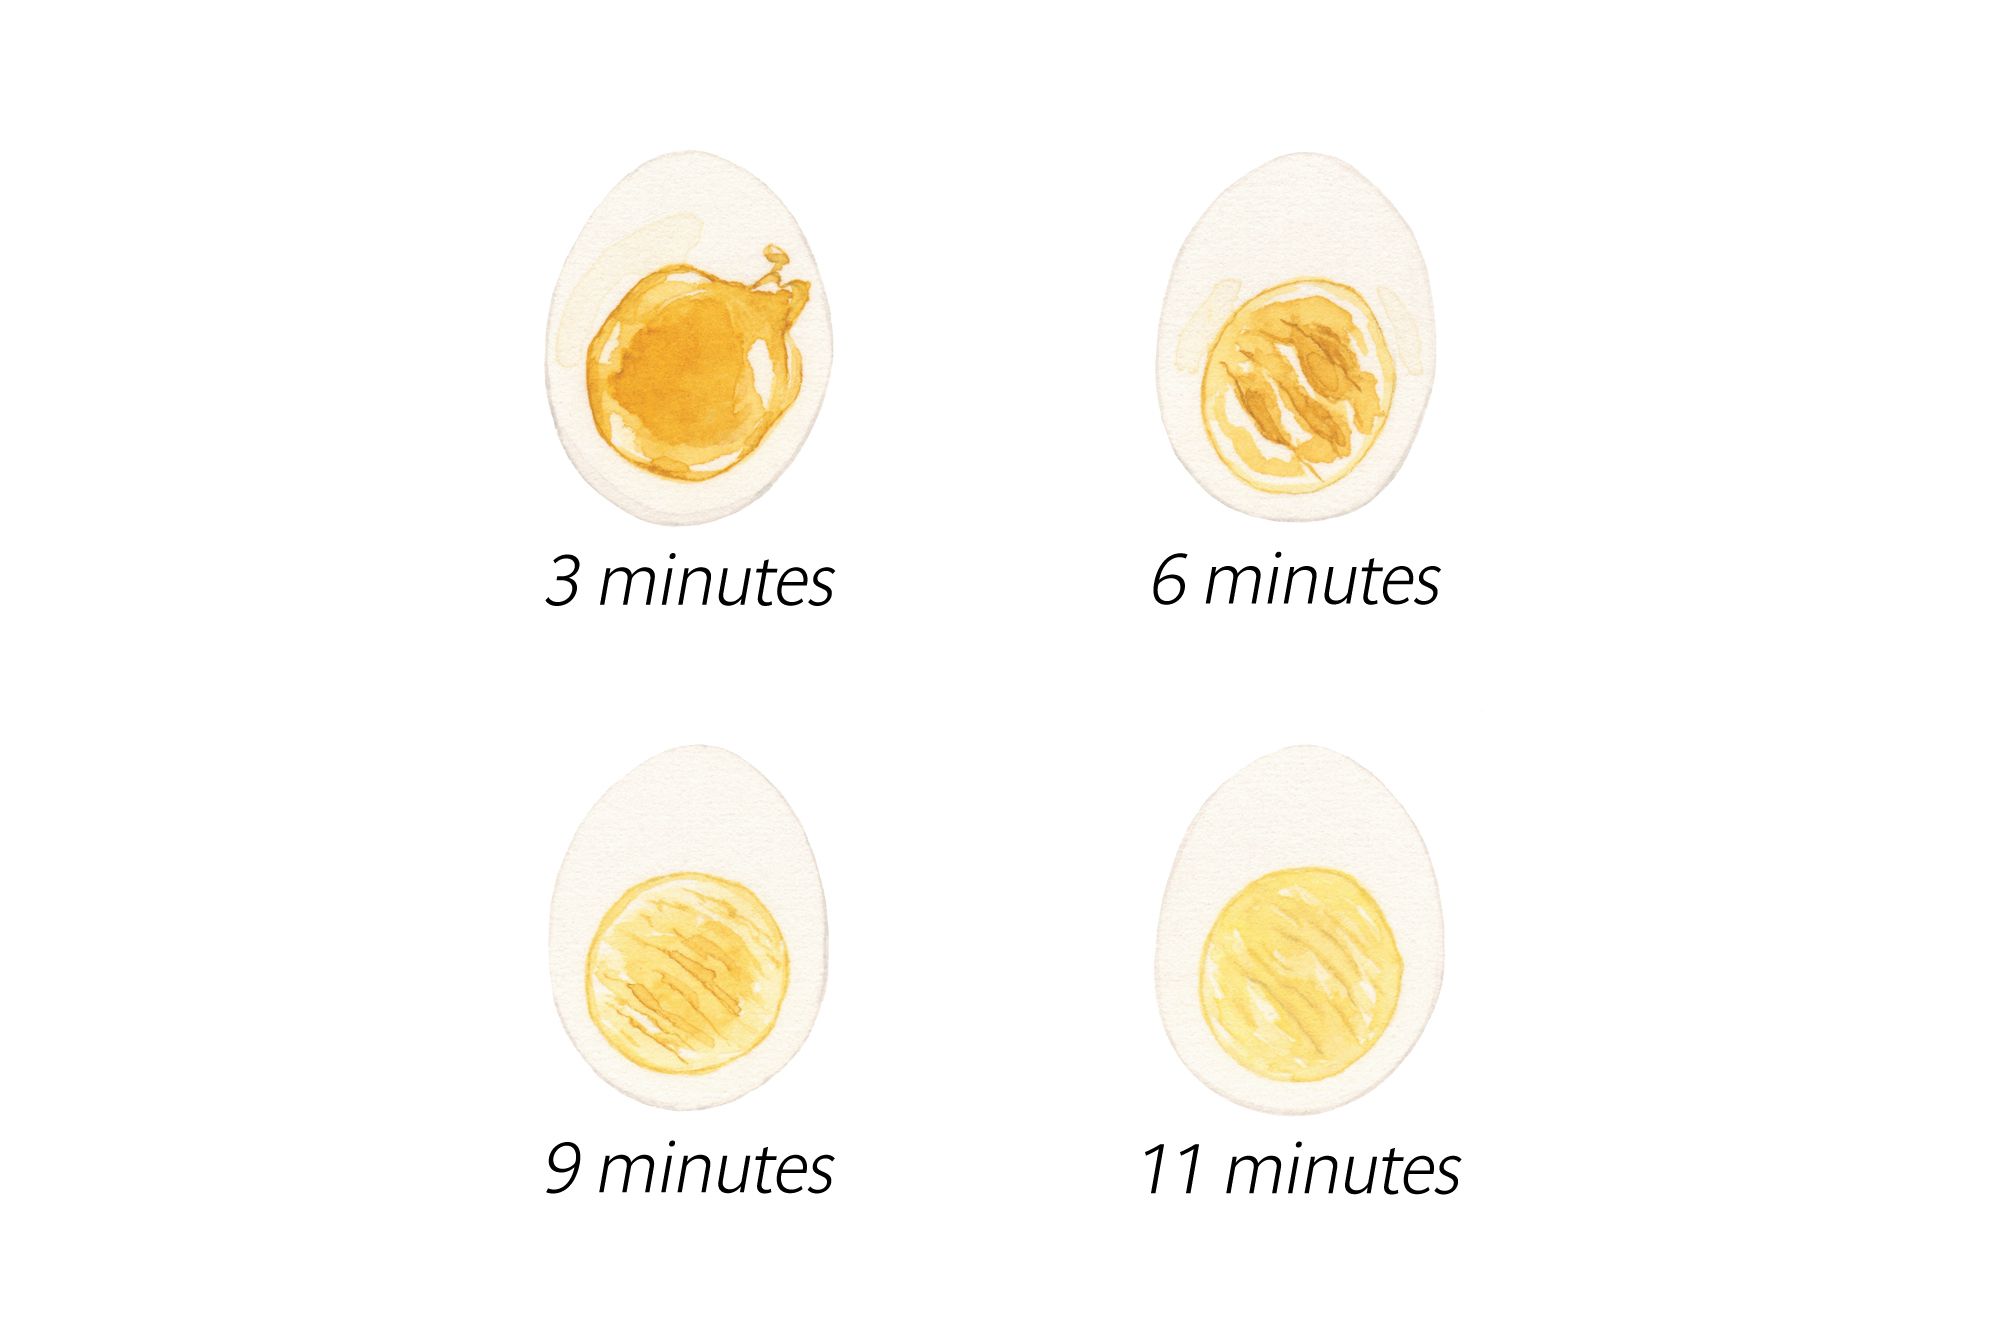 Weich- und hartgekochte Eier genau richtig bekommen